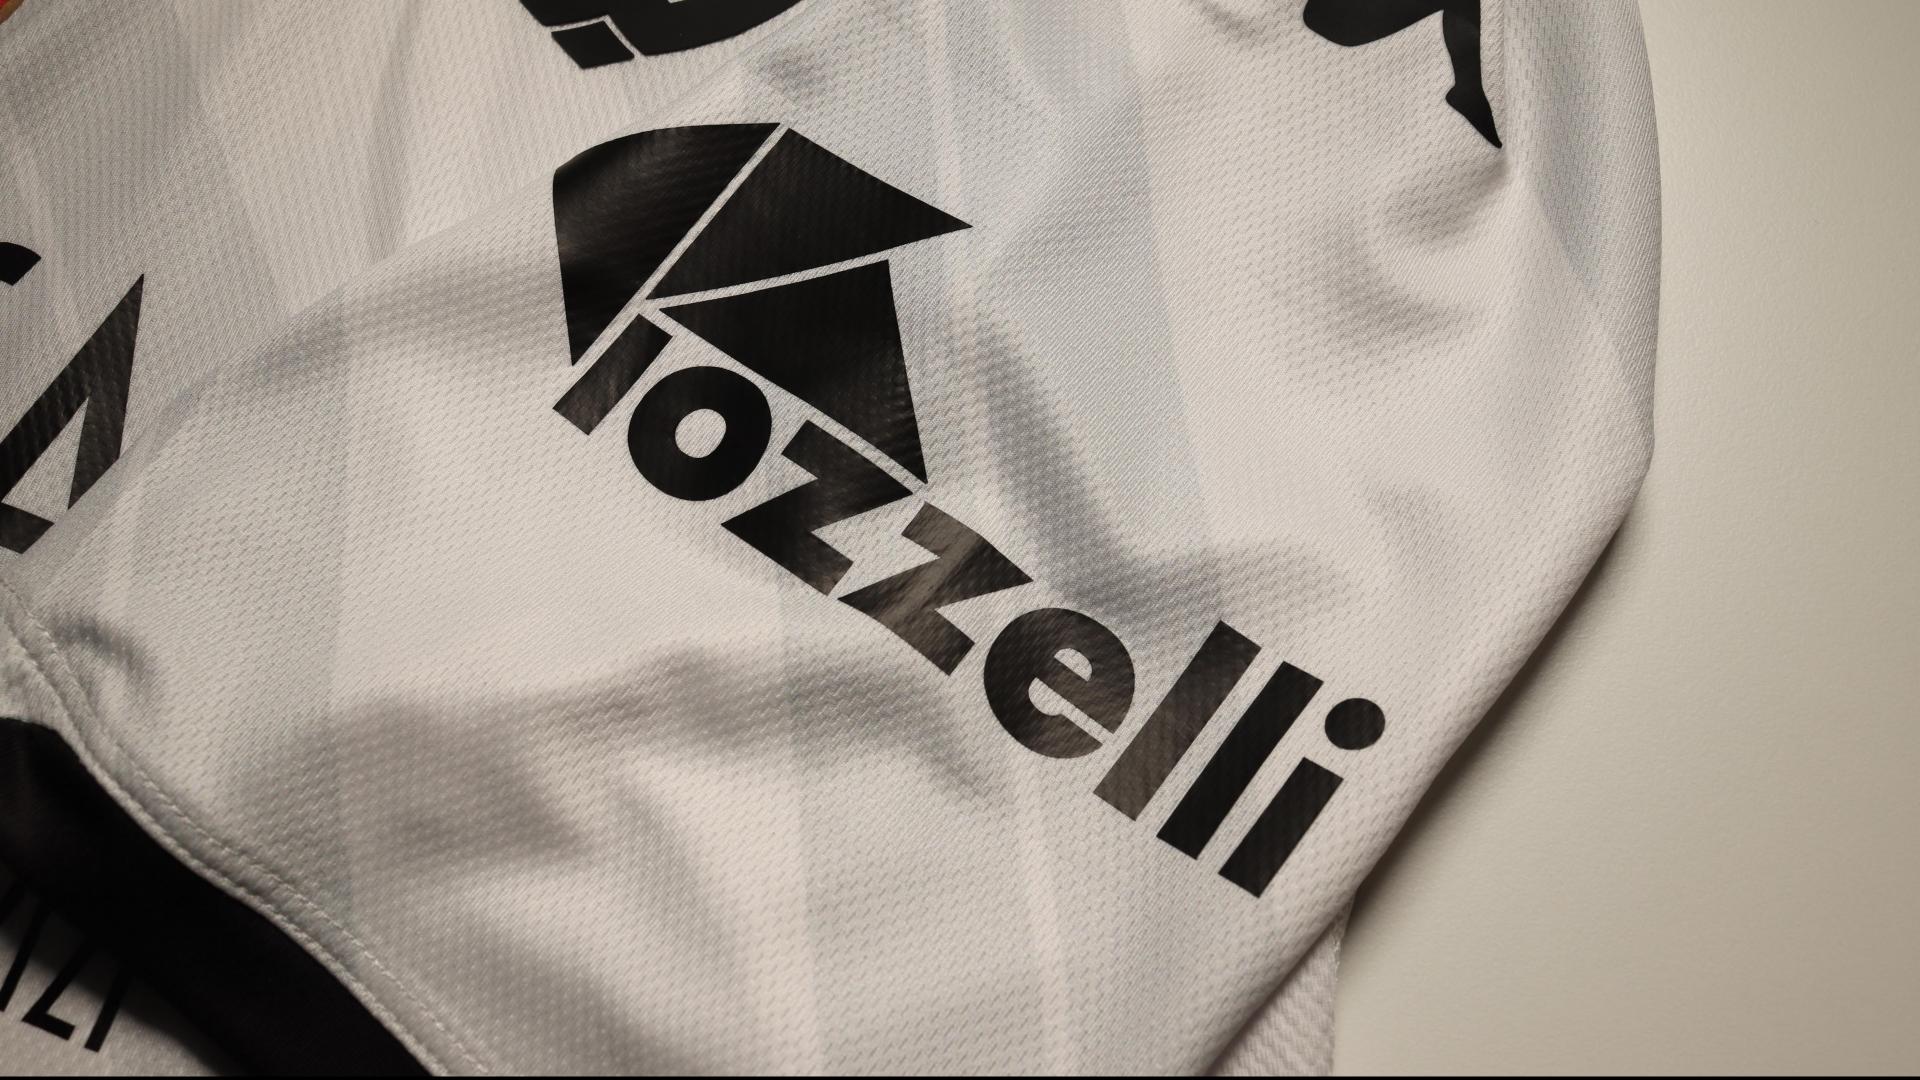 Iozzelli si conferma Sleeve Sponsor dello Spezia Calcio anche per le stagioni 23/24 e 24/25